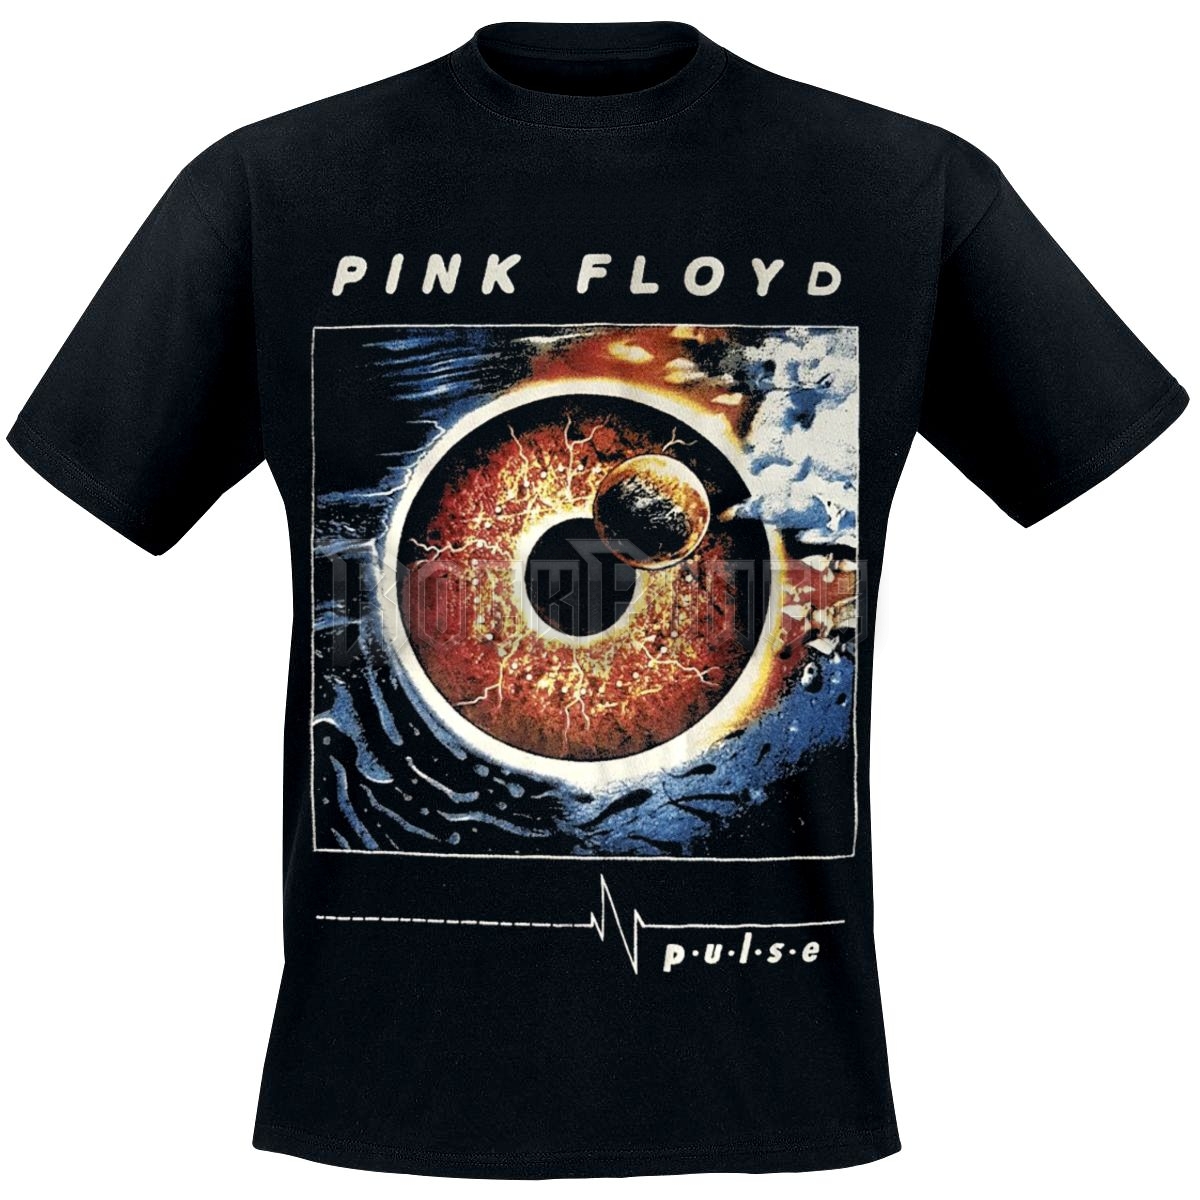 Pink Floyd - P.U.L.S.E. - UNISEX PÓLÓ